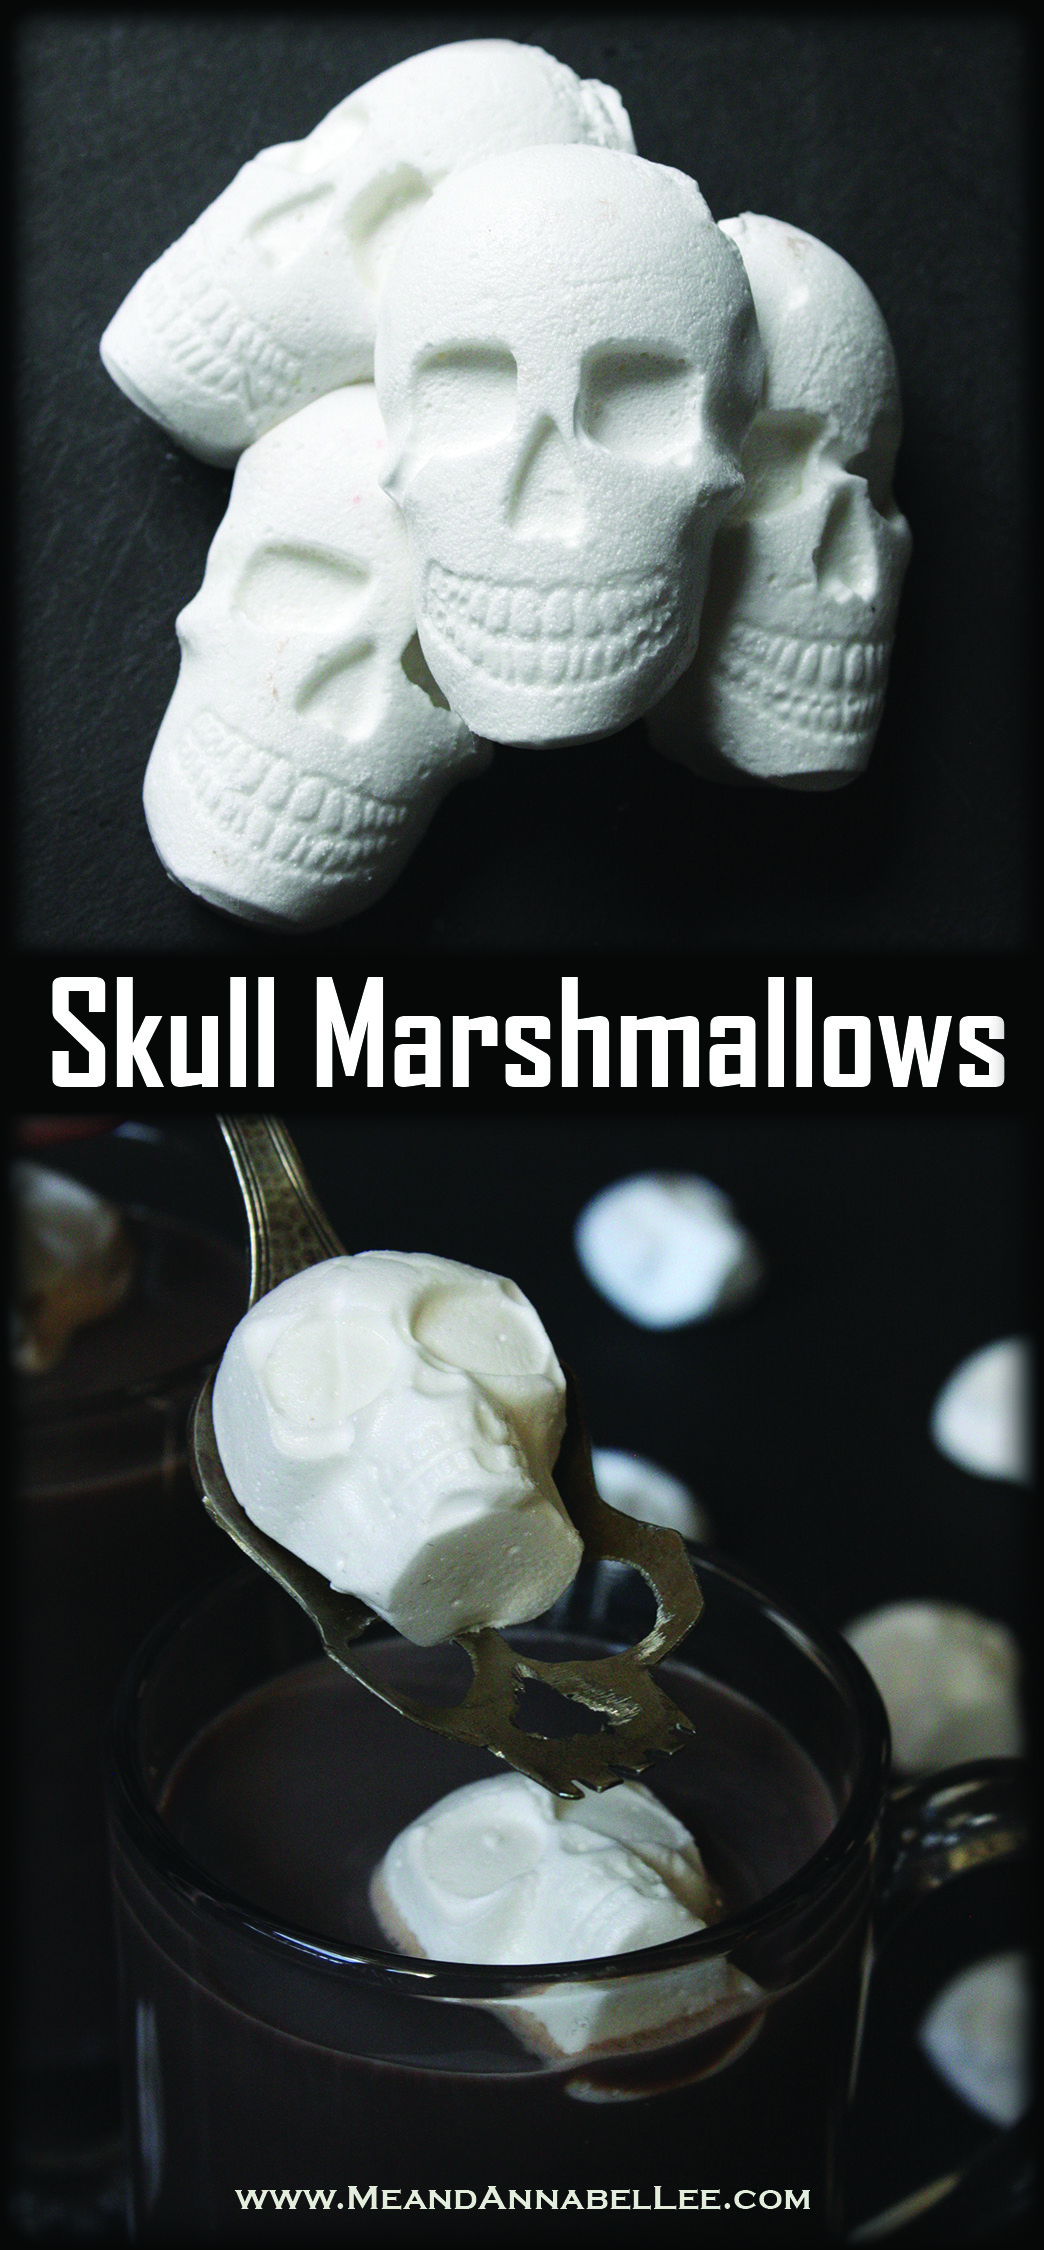 http://www.meandannabellee.com/wp-content/uploads/2019/02/skull-marshmallow-combo.jpg